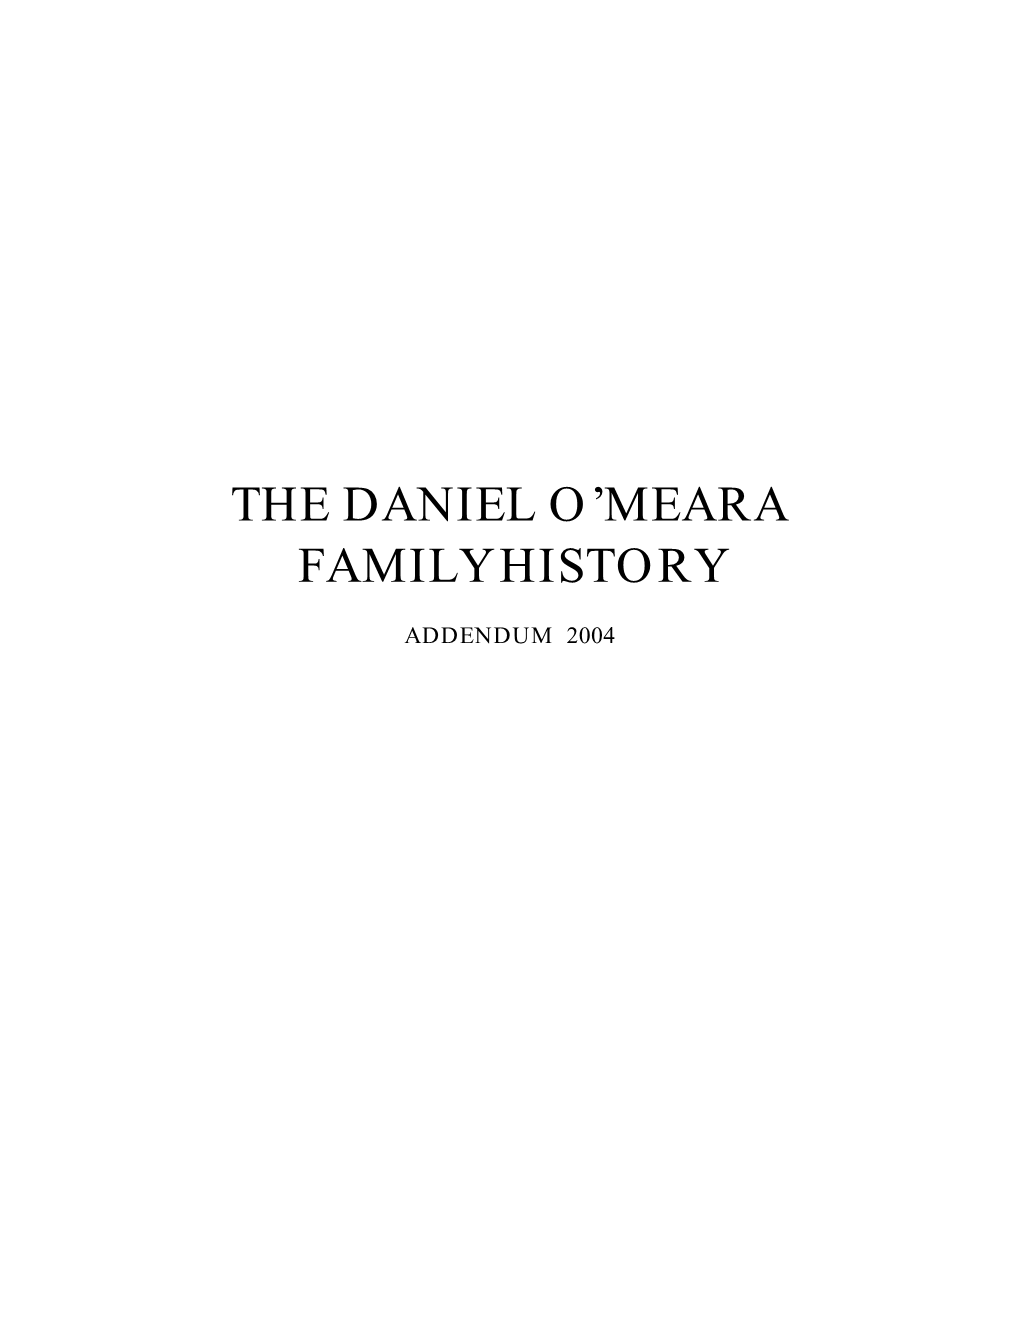 The Daniel O'meara Family History